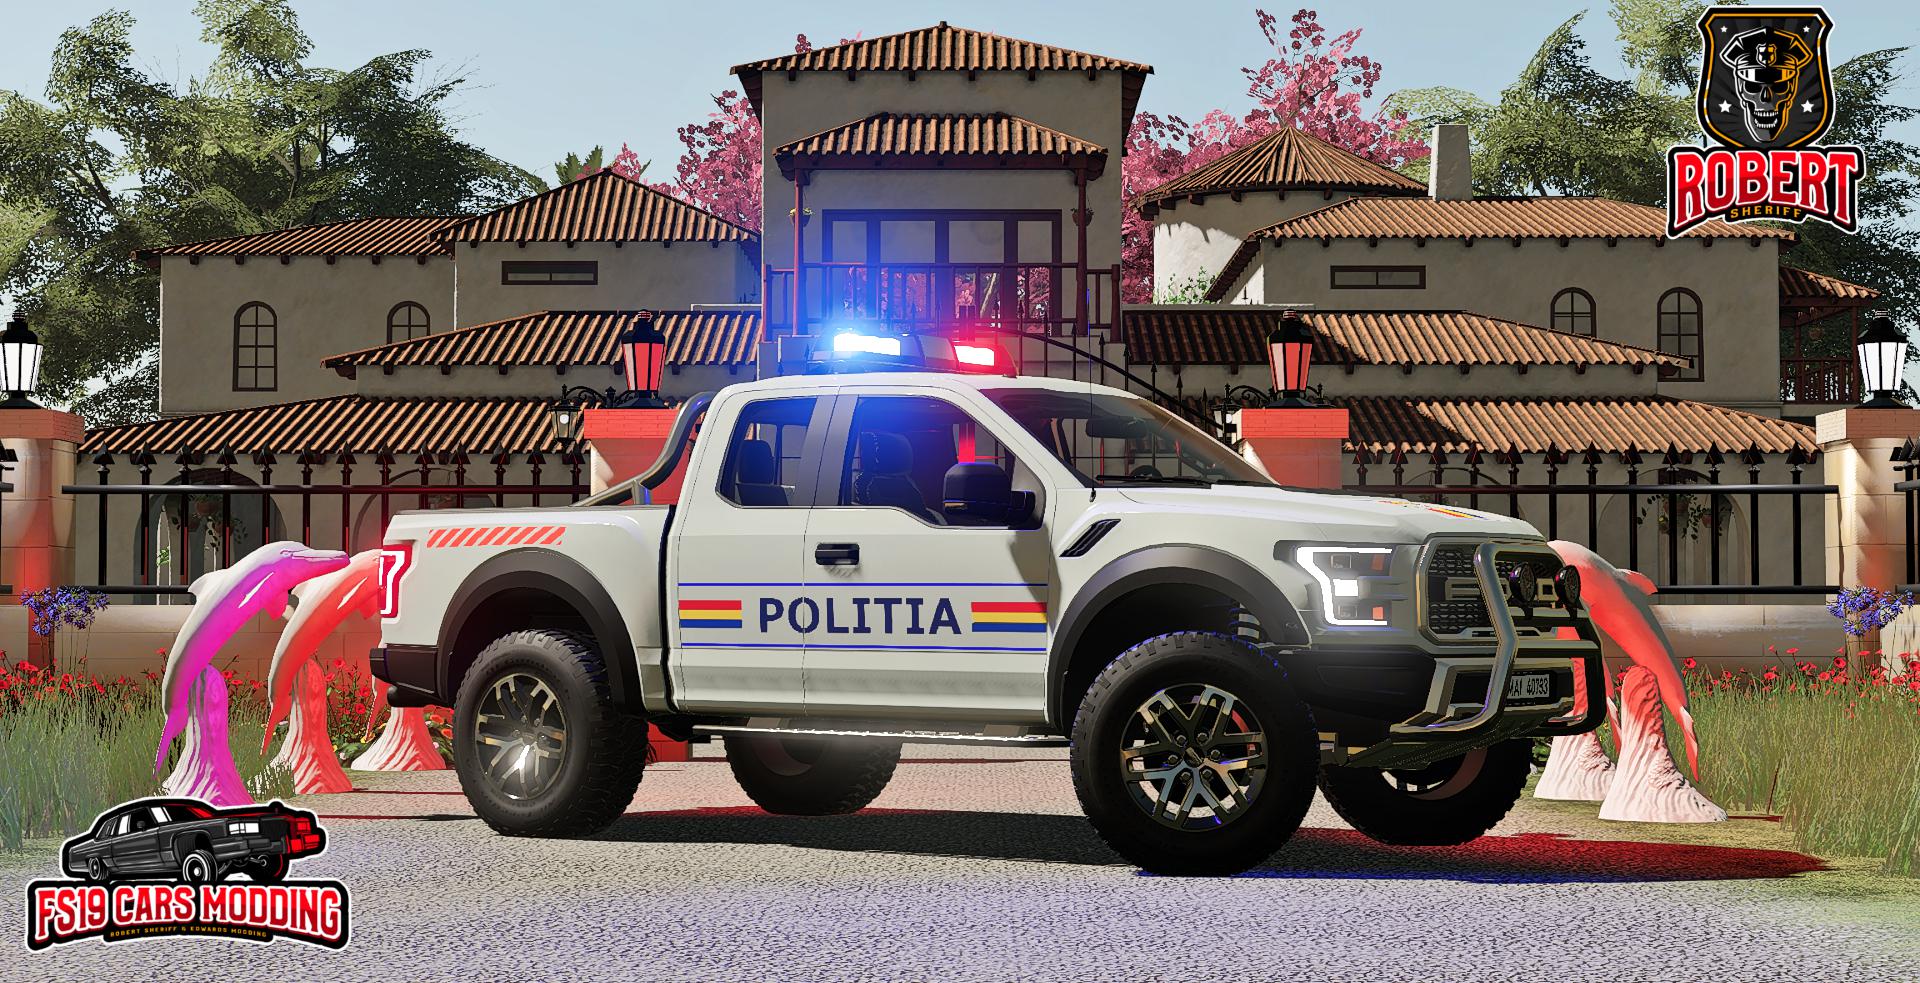 Ford Raptor Politia V10 Fs19 Fs22 Mod F19 Mod Images And Photos Finder 0208